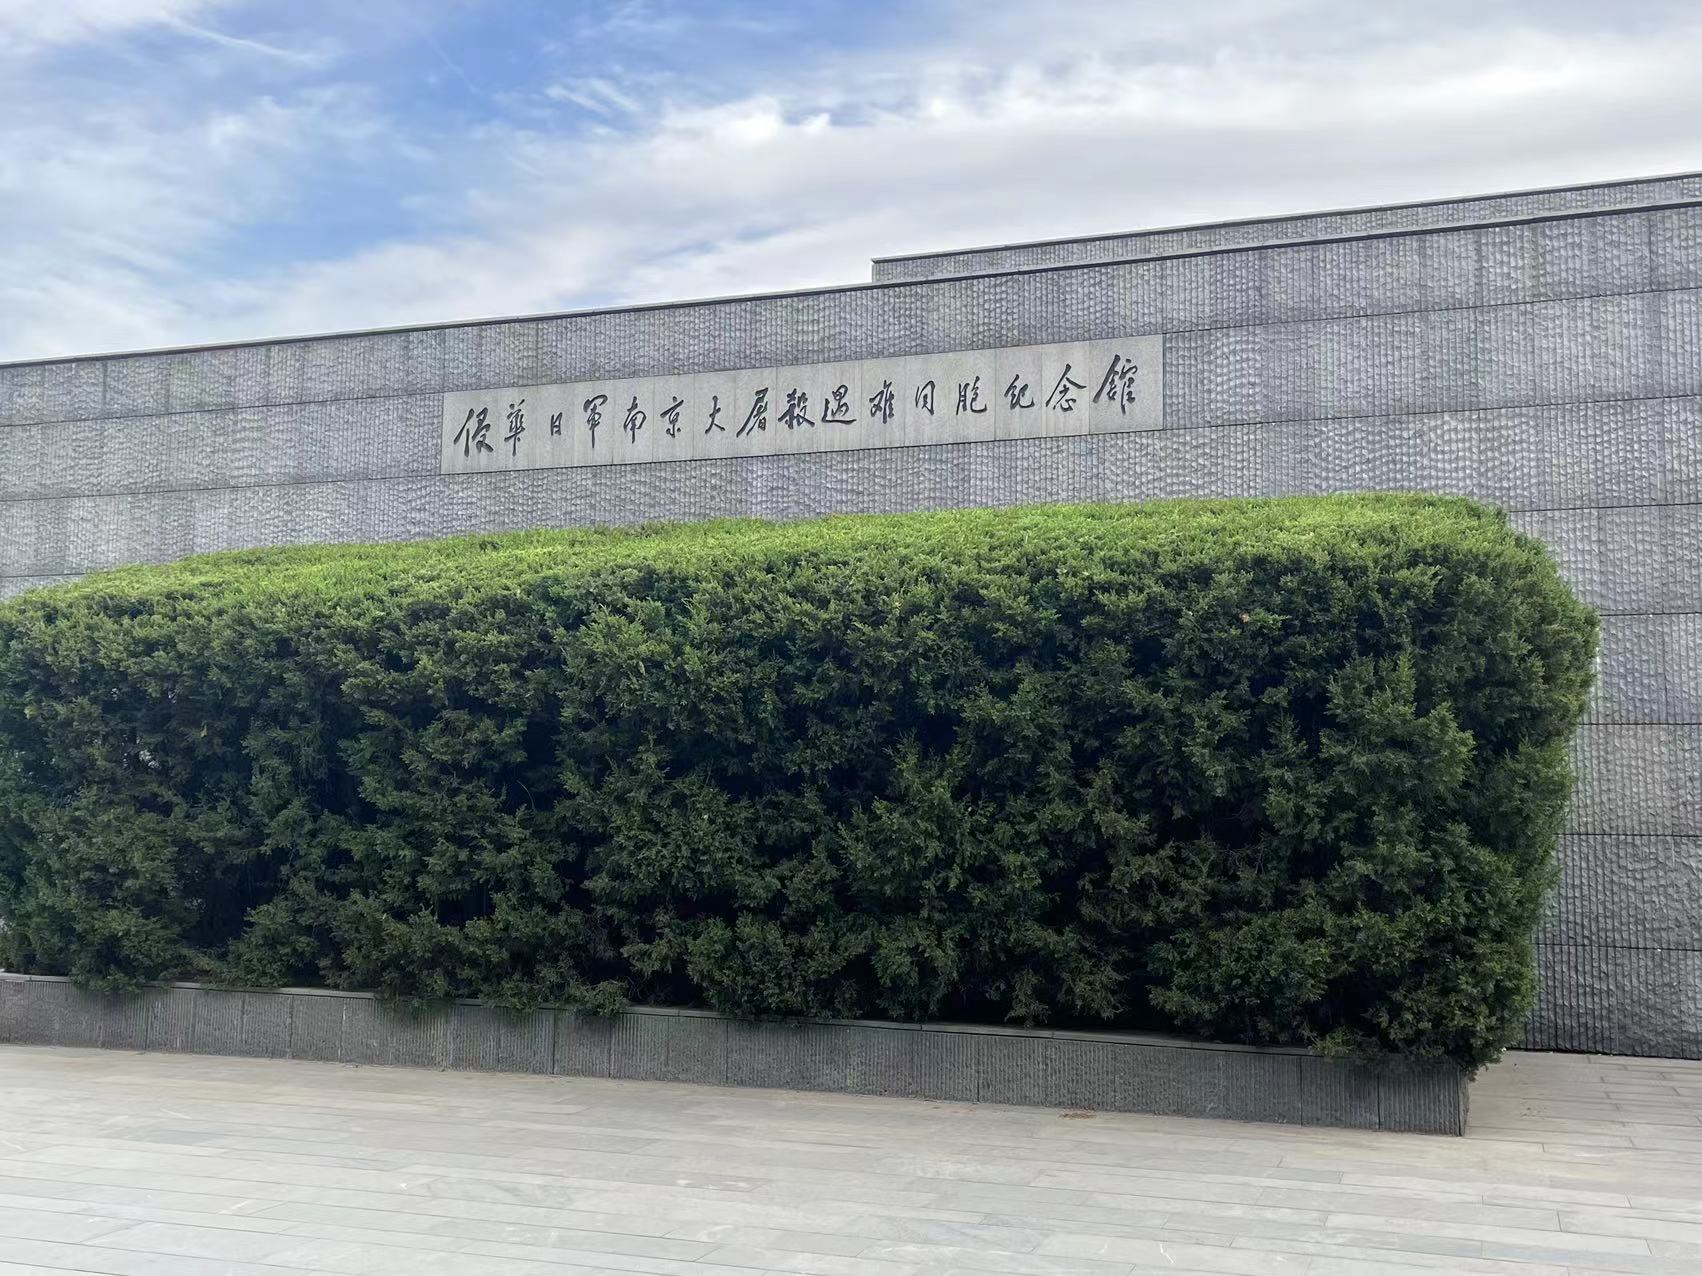 Naša tvrtka organizirala je posjet Memorijalnoj dvorani žrtava masakra u Nanjingu